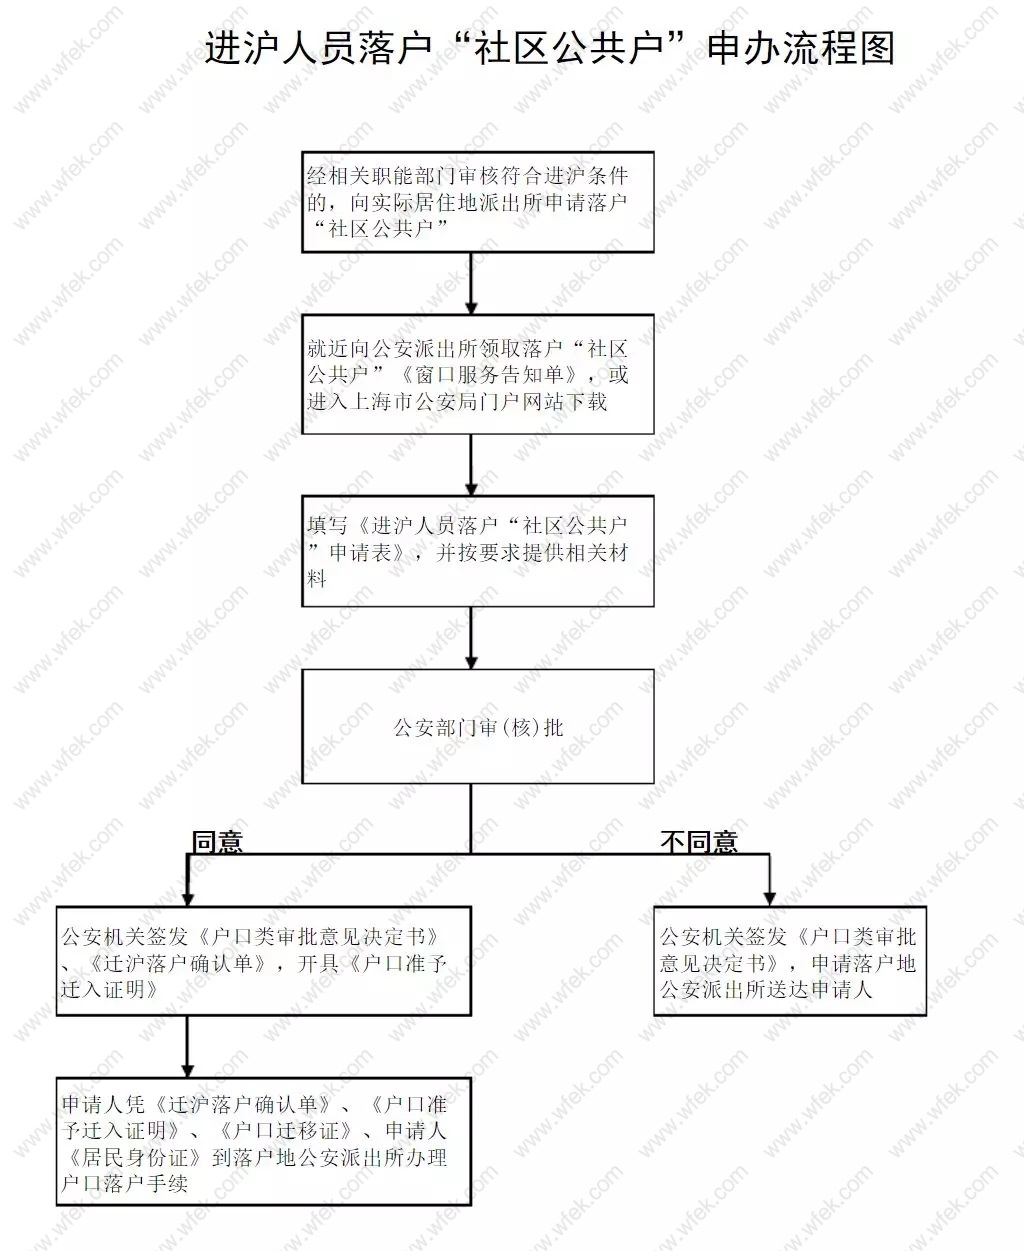 上海落户社区公共户申请流程